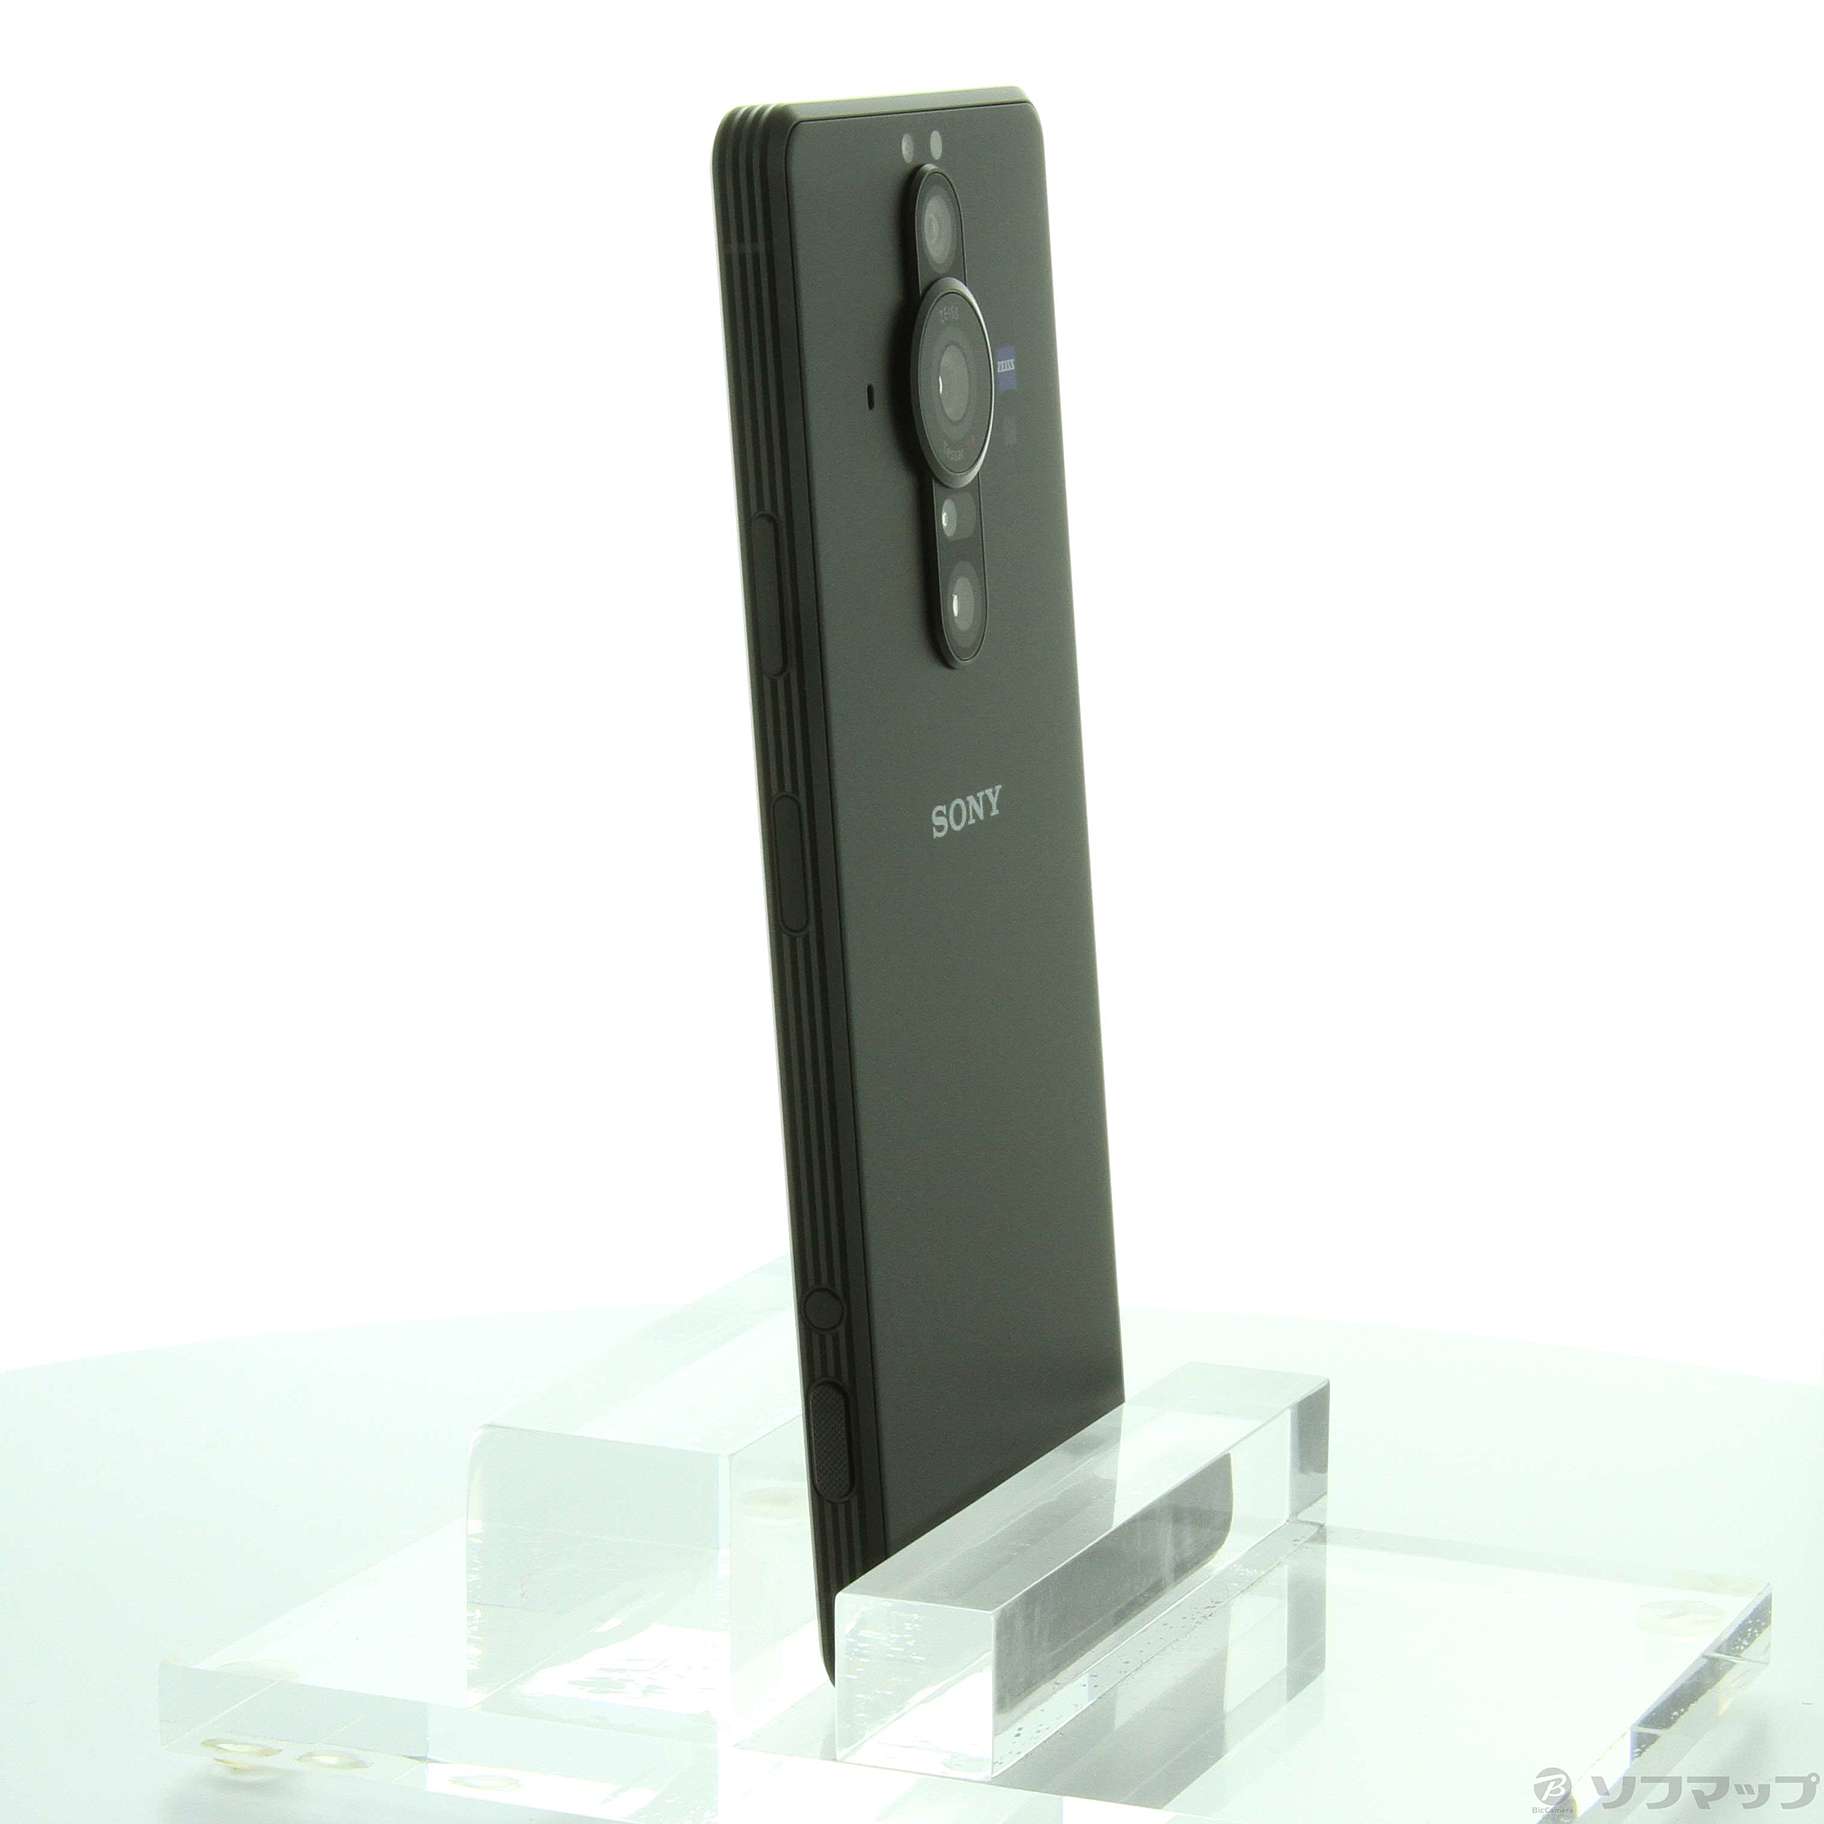 中古】Xperia PRO-I 512GB フロストブラック XQ-BE42 SIMフリー